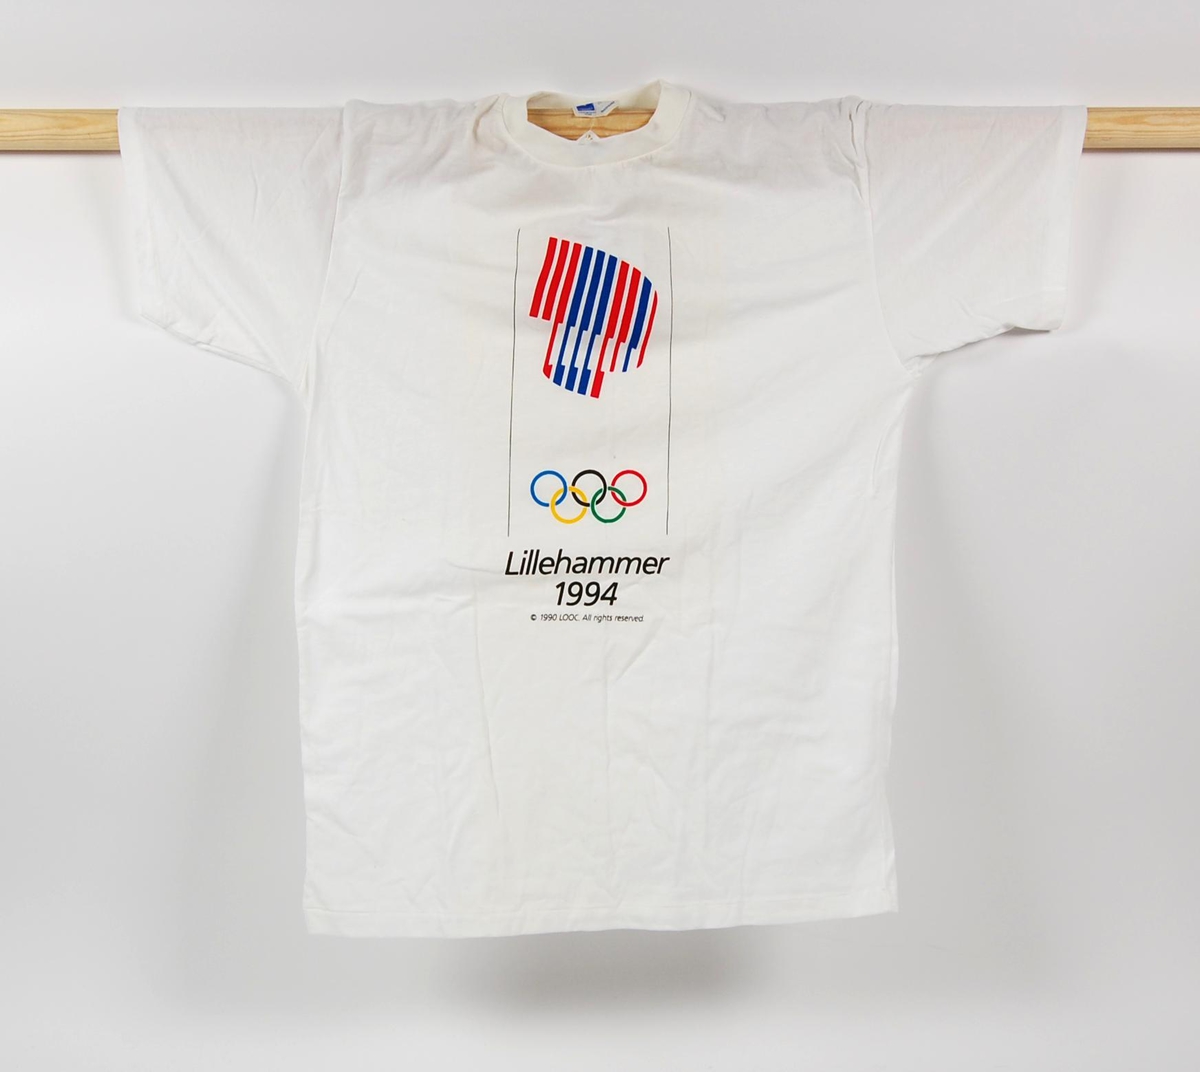 Hvit t-skjorte i størrelse M. T-skjorten har logo for de olympiske vinterleker på Lillehammer i 1994.